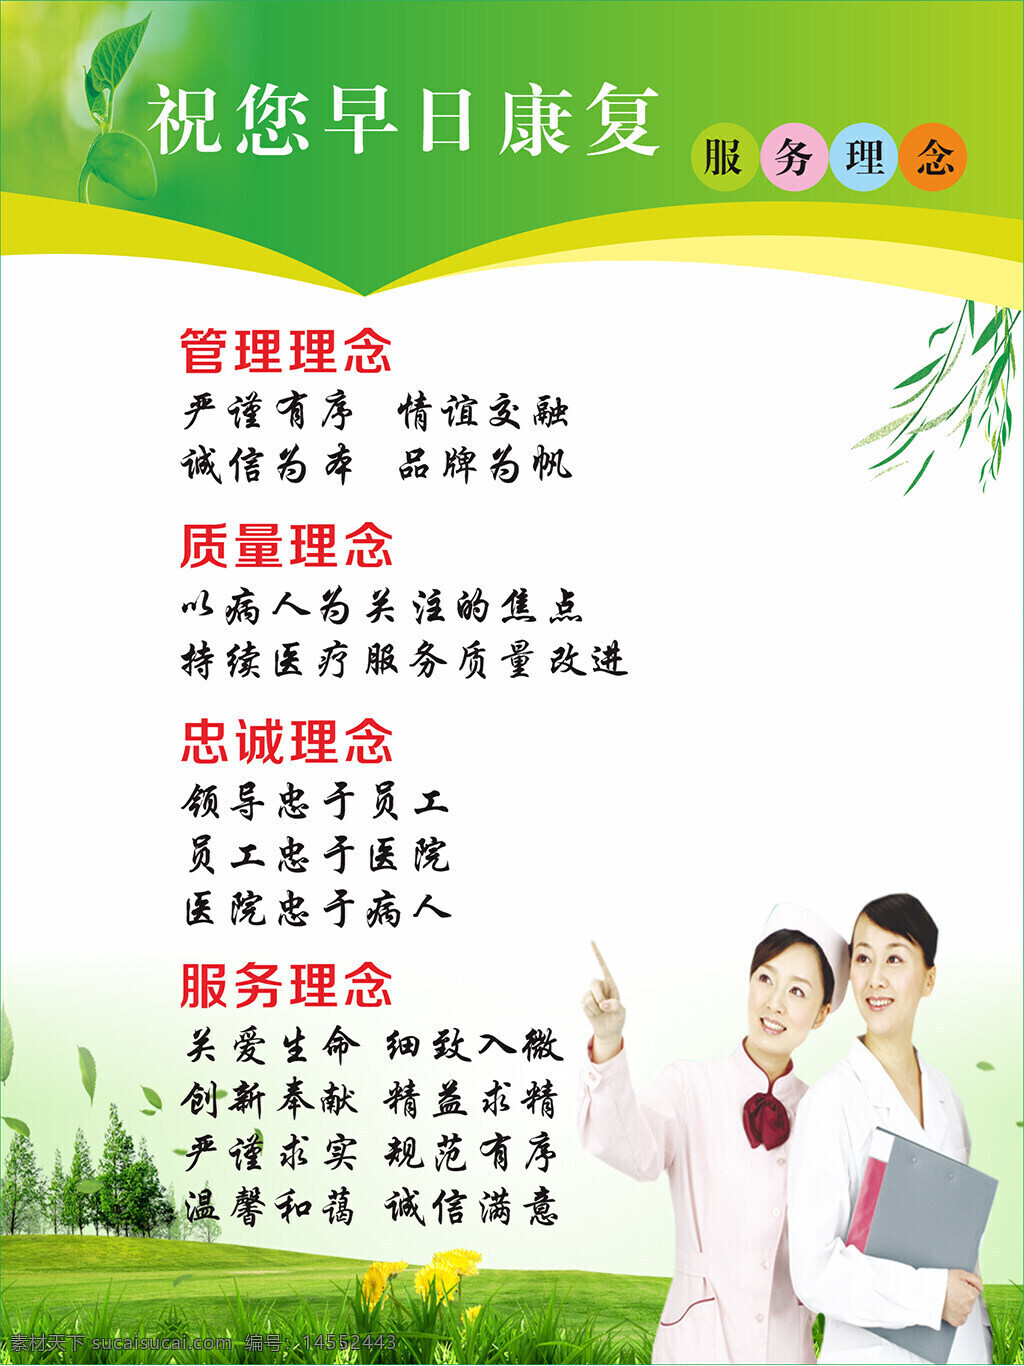 医院文化 健康文化 健康中国文化 健康中国行动 以人民健康 为中心 健康教育宣传 社区卫生服务 大卫生理念 大健康理念 设计 广告设计 展板模板 cdr